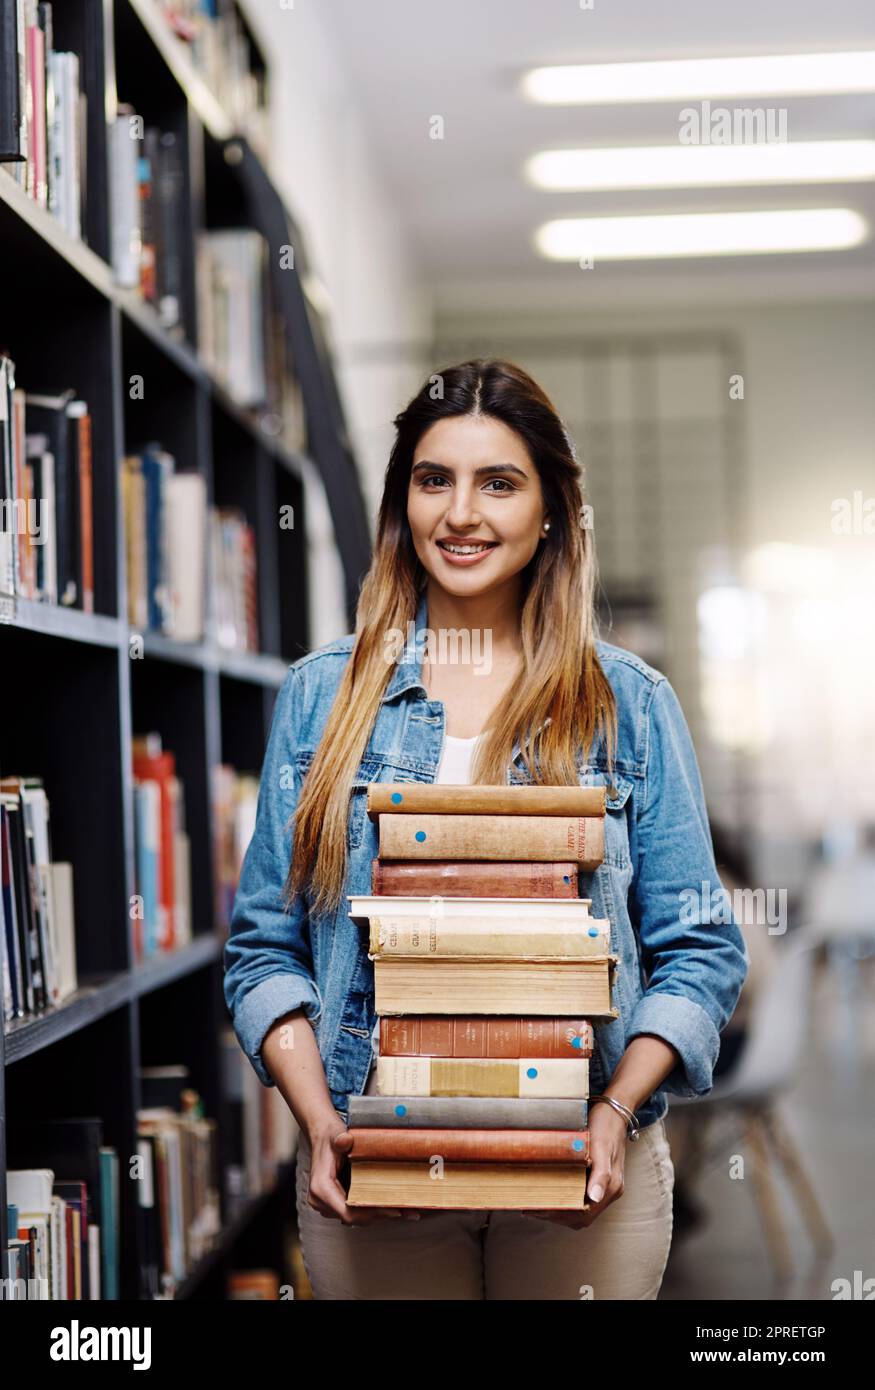 Das sind alle Bücher, die dieses akademische Jahr nicht brauchen. Porträt einer glücklichen jungen Frau, die Bücher in einer Bibliothek am College trägt. Stockfoto